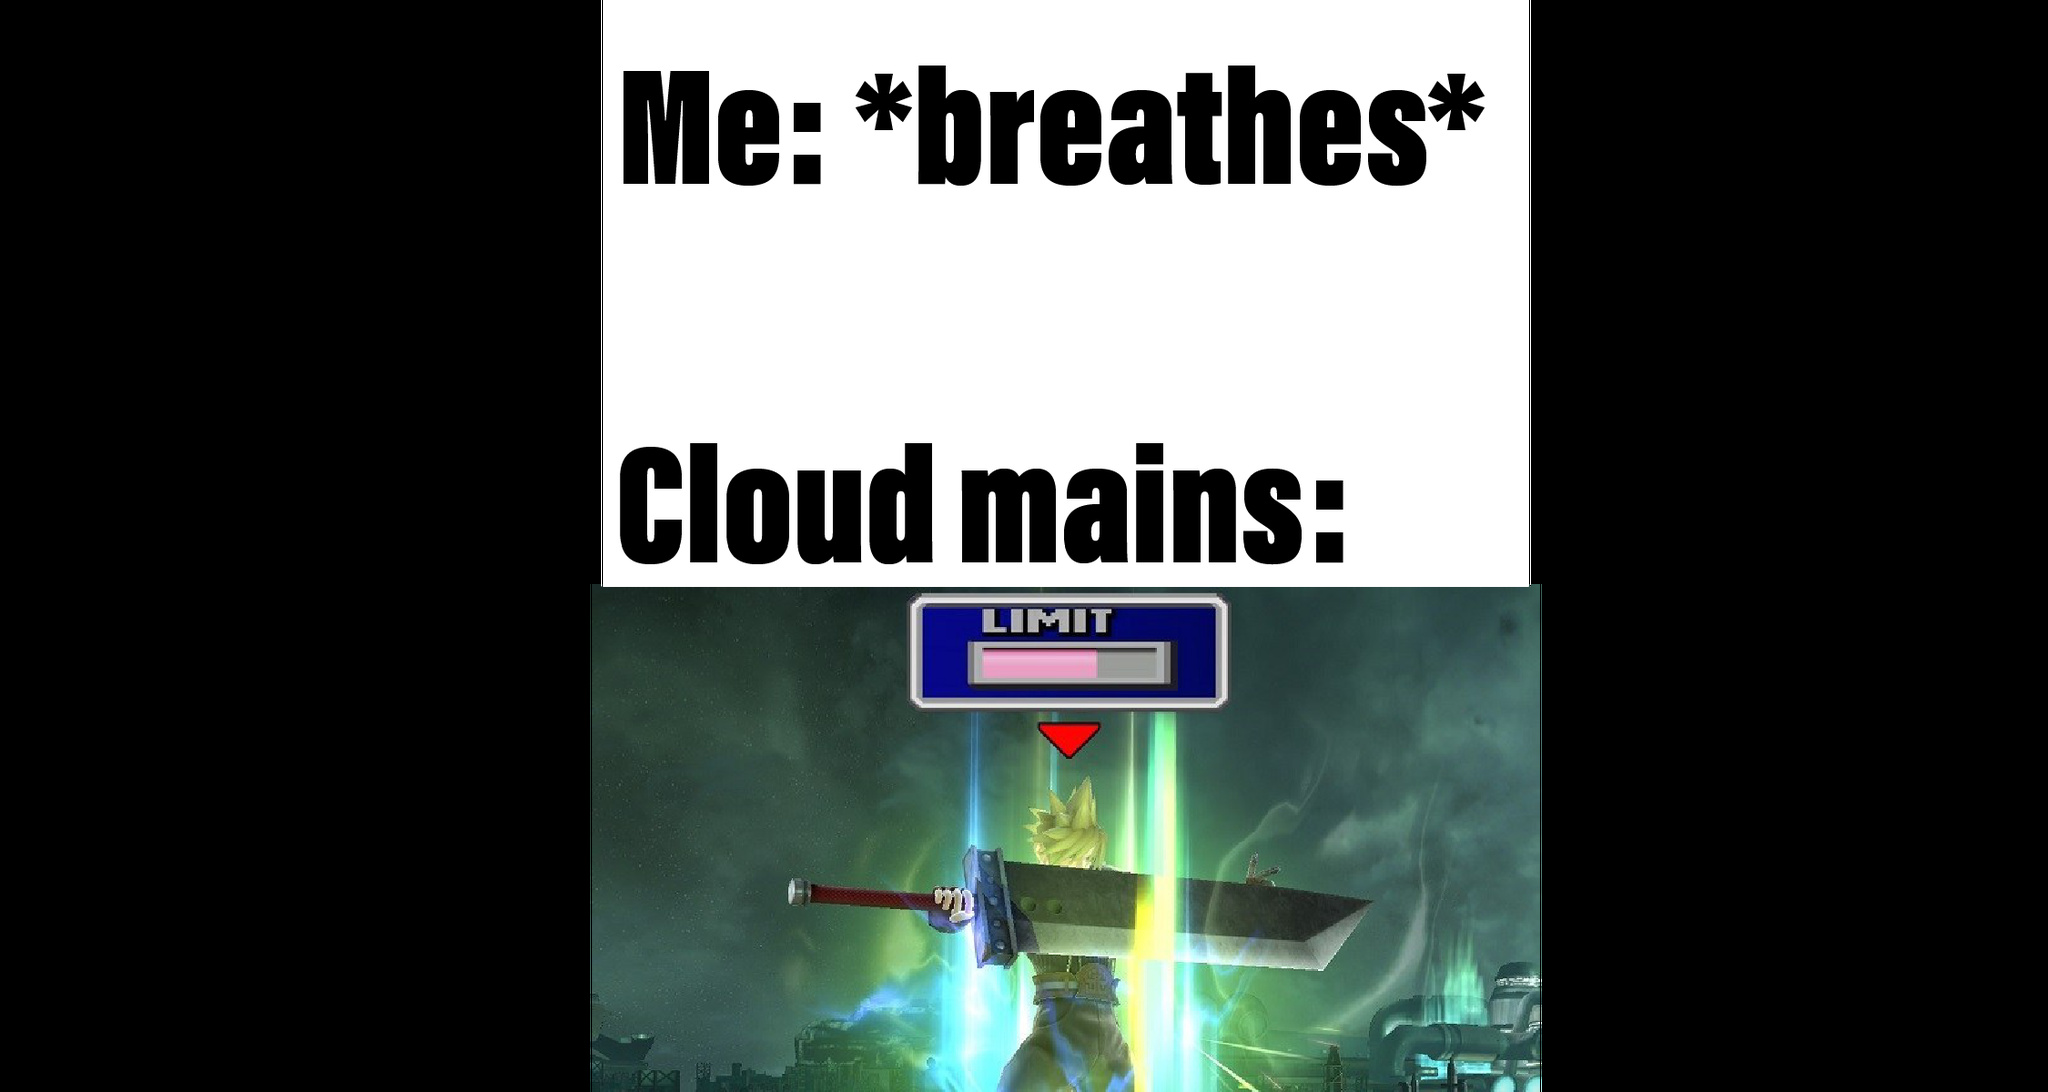 Cloud mains in a nutshell - meme